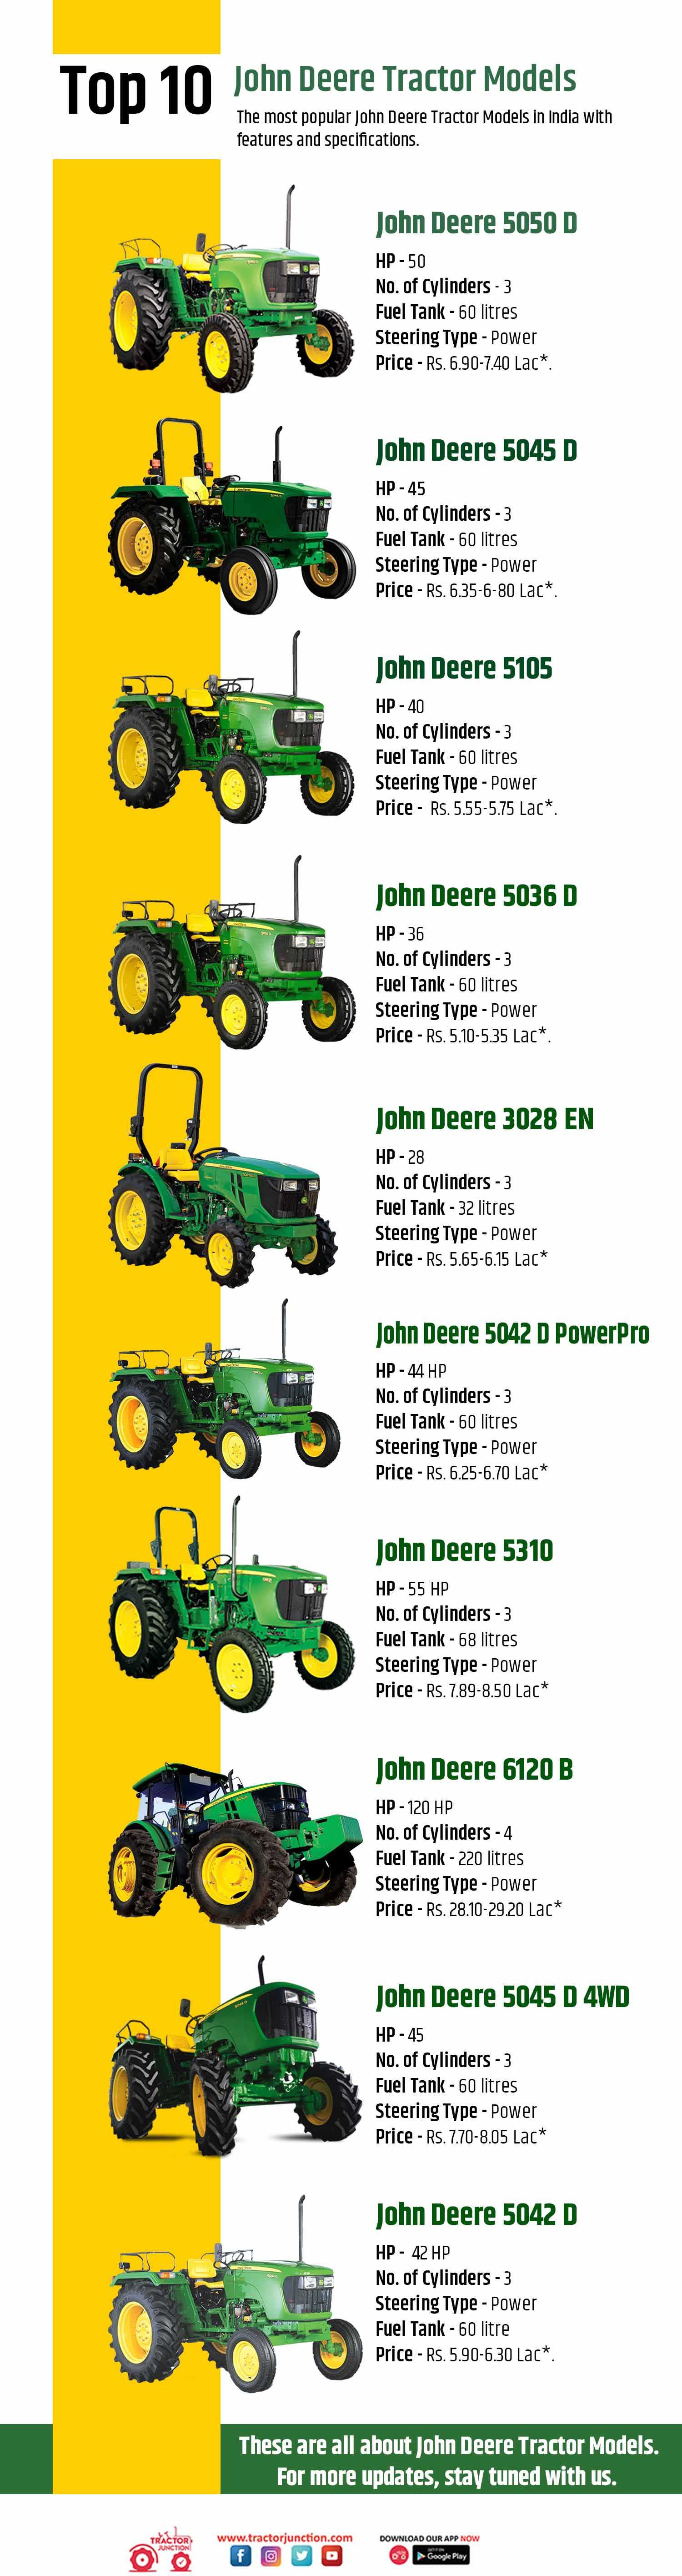 Top 10 John Deere Tractor - Infographic